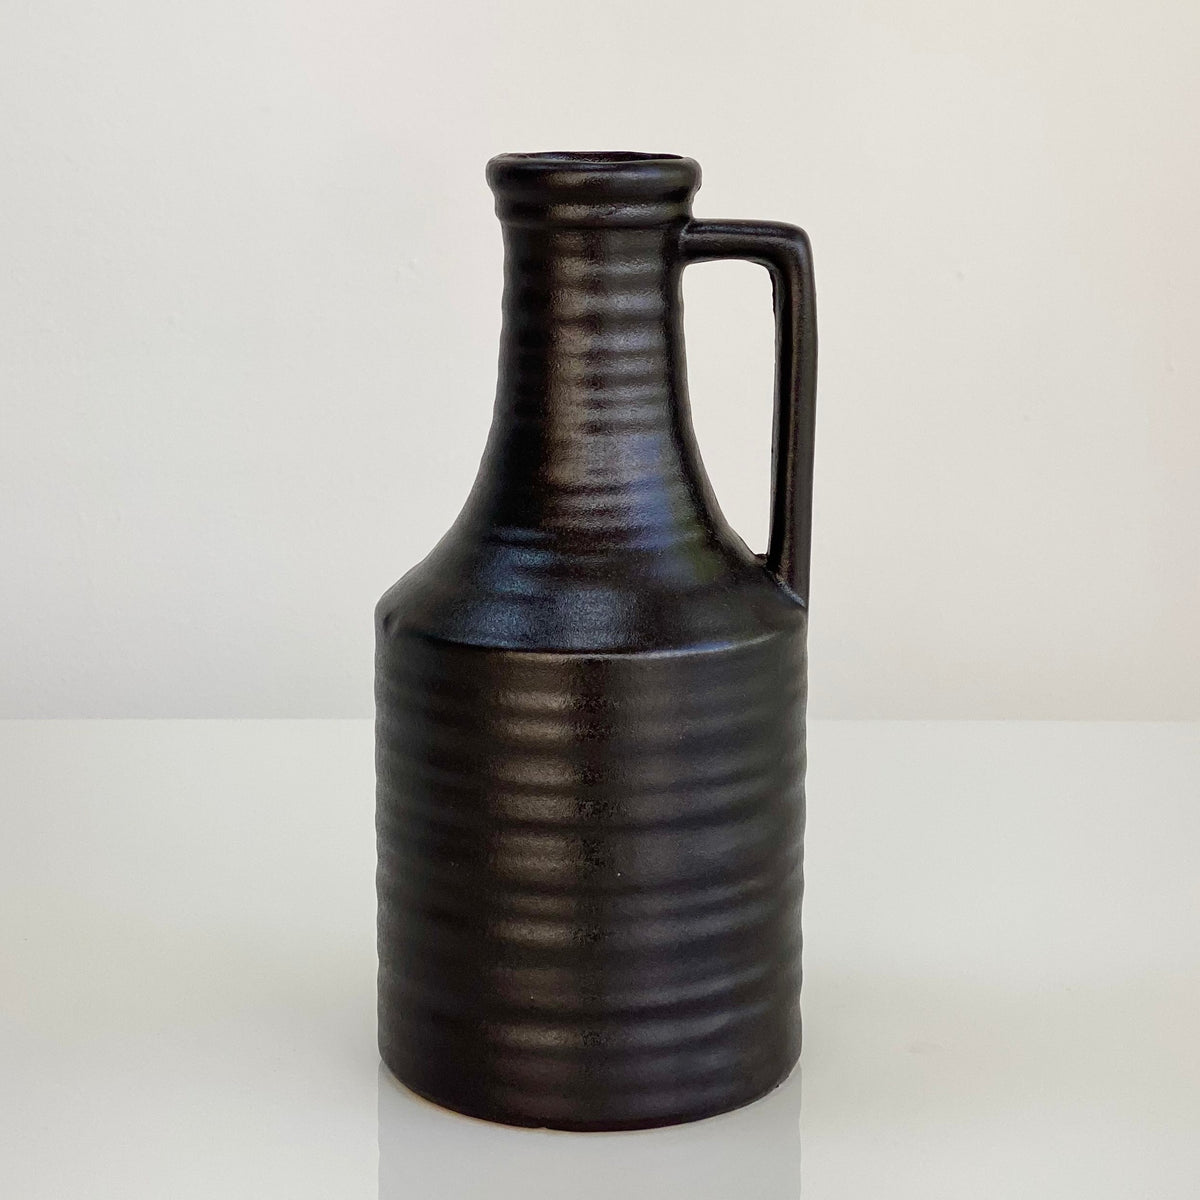 Ceramic Black Bottle Vase with Side Handle